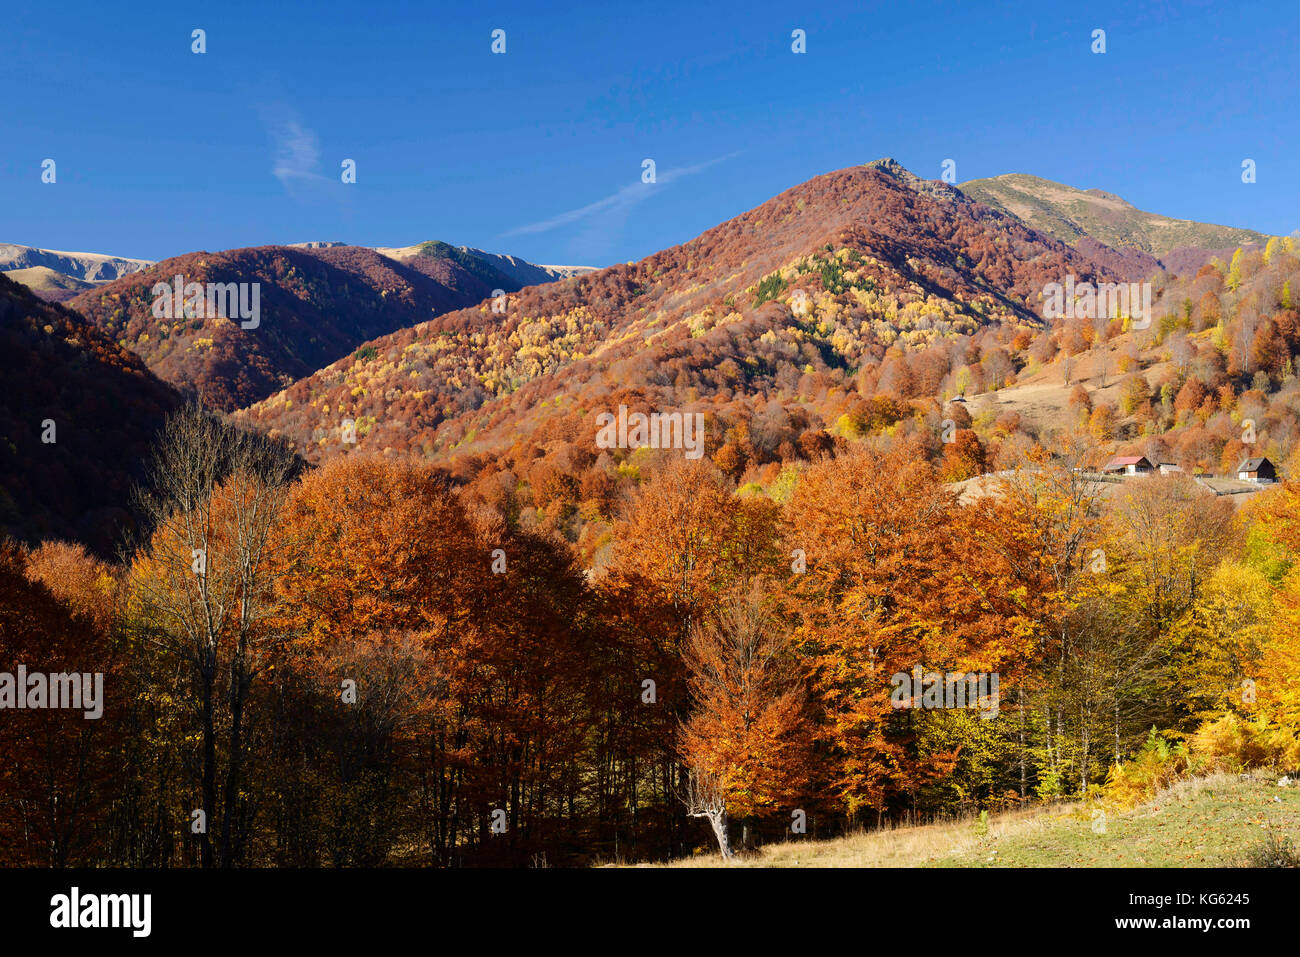 Domogled - Parco Nazionale di Valea Cernei / Romania: Foresta primaria in gran parte non protetta e minacciata nella zona tampone Patrimonio Mondiale dell'UNESCO (Cernisoara). Foto Stock